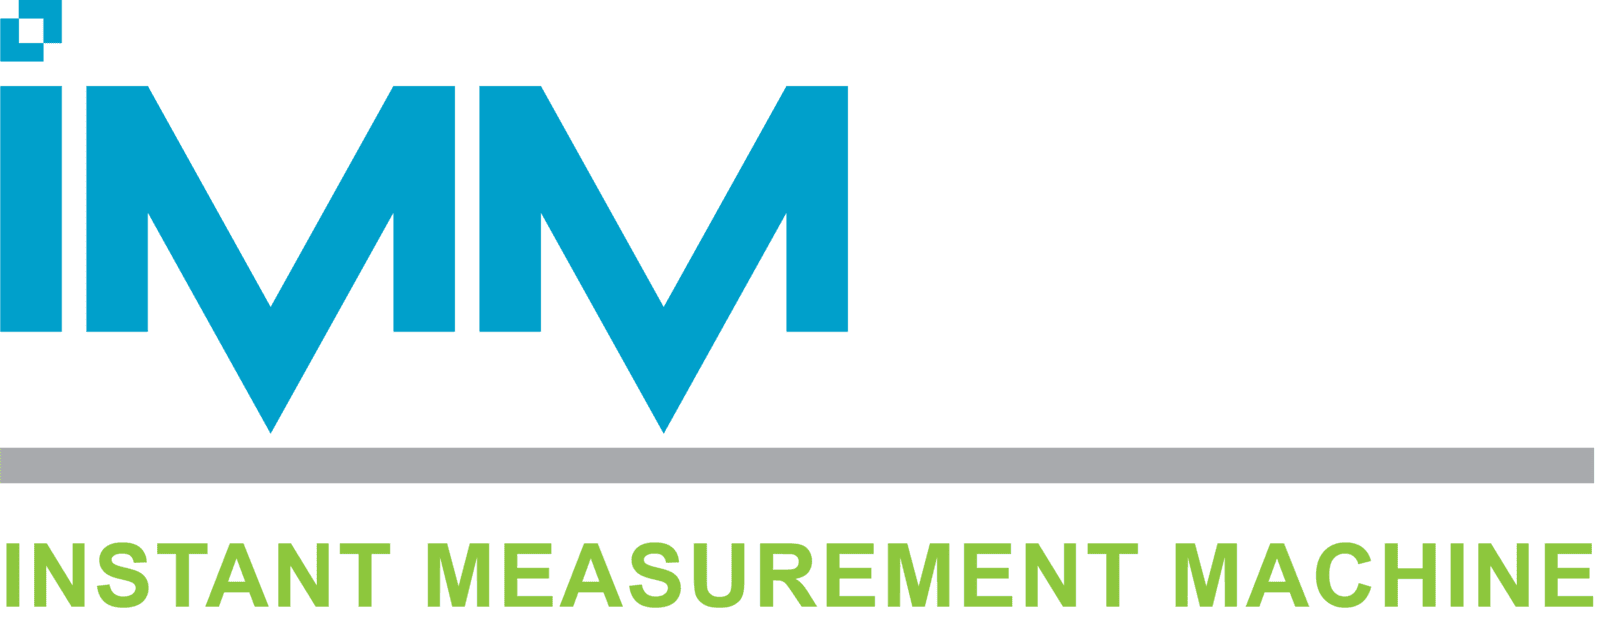 Instant Measurement Machine